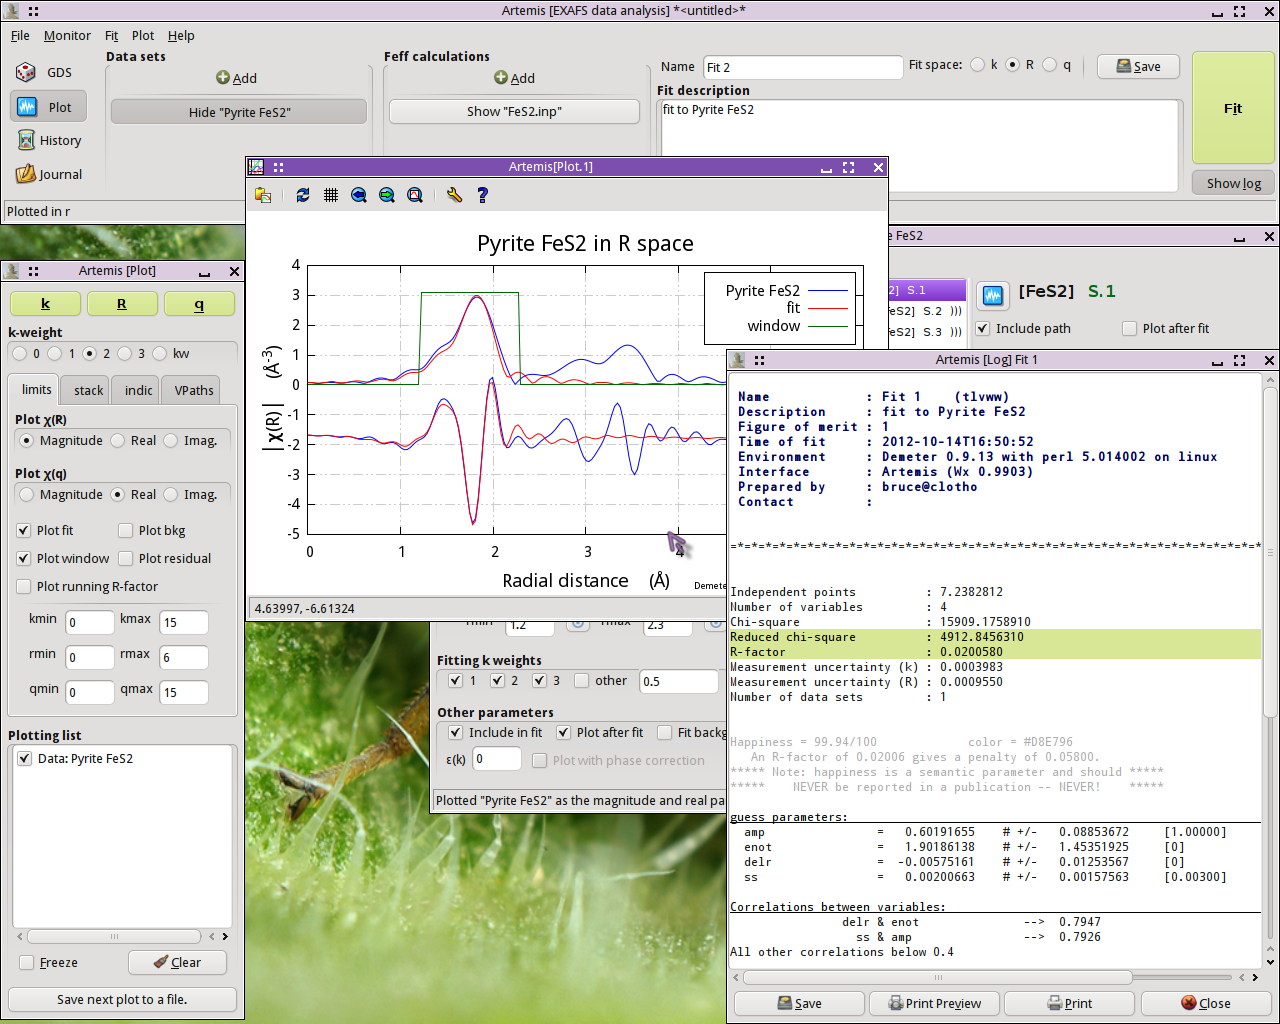 artemis xas analysis software download